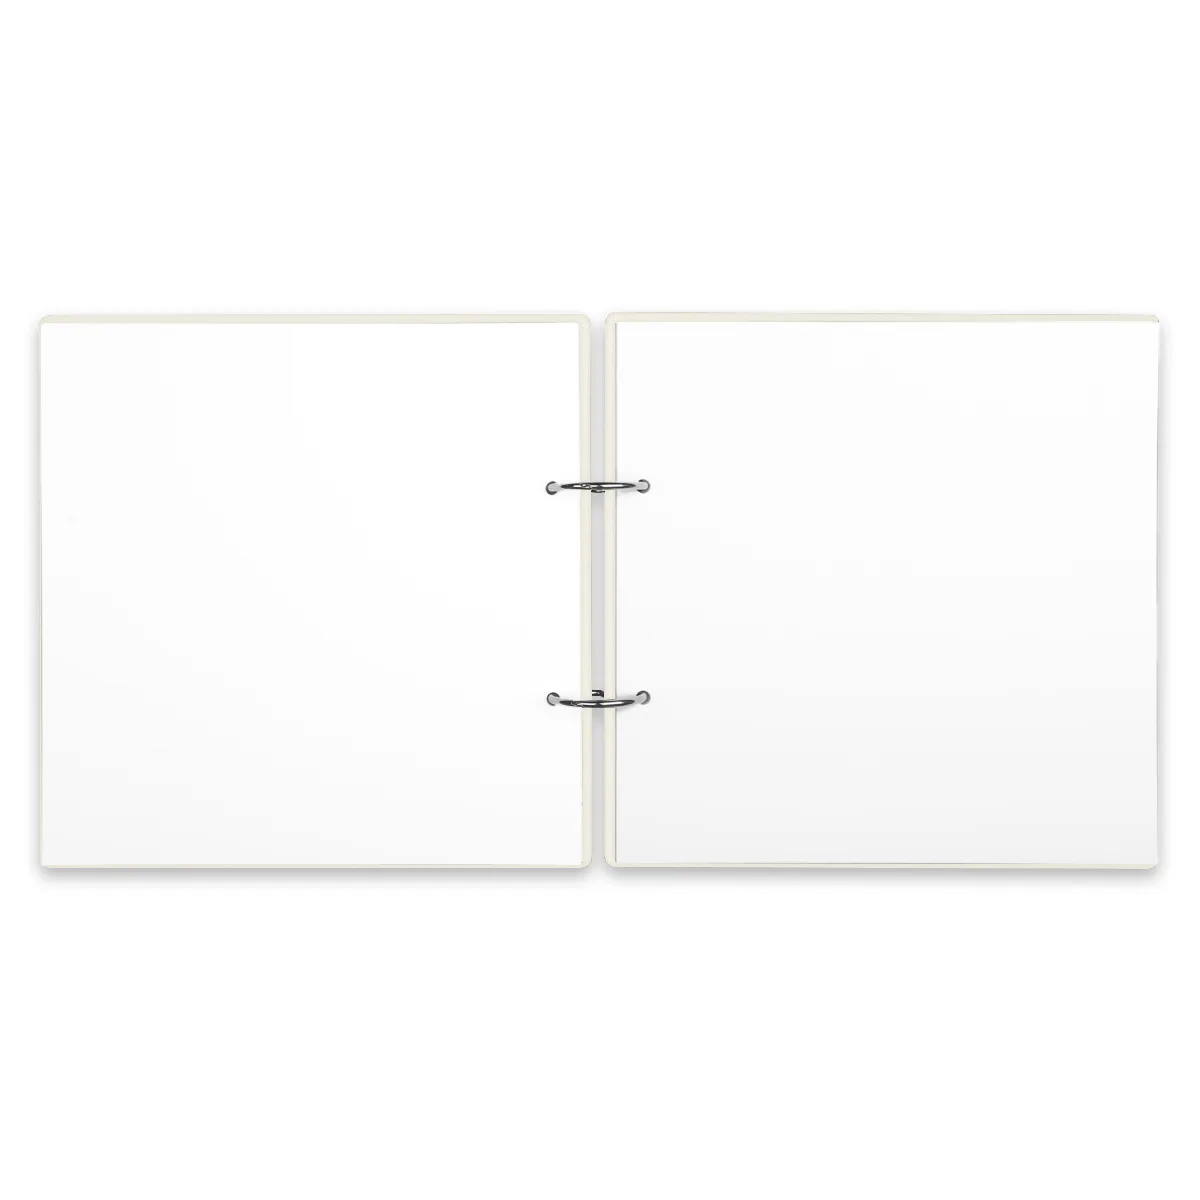 Personalisiertes Holzcover Hochzeit Gästebuch - Weltkarte